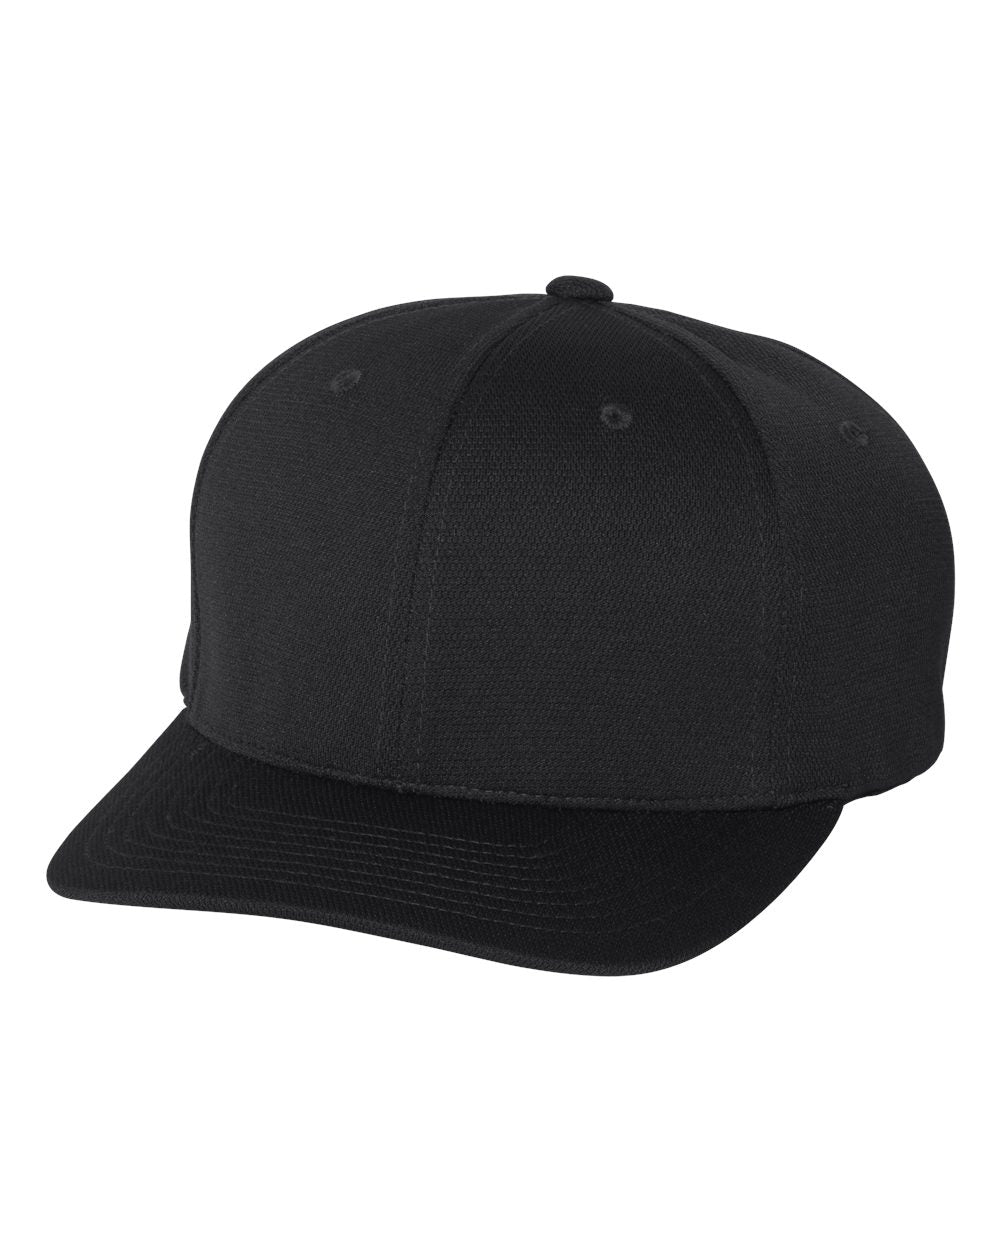 Flexfit Cool & Dry Sport Cap 6597 #color_Black